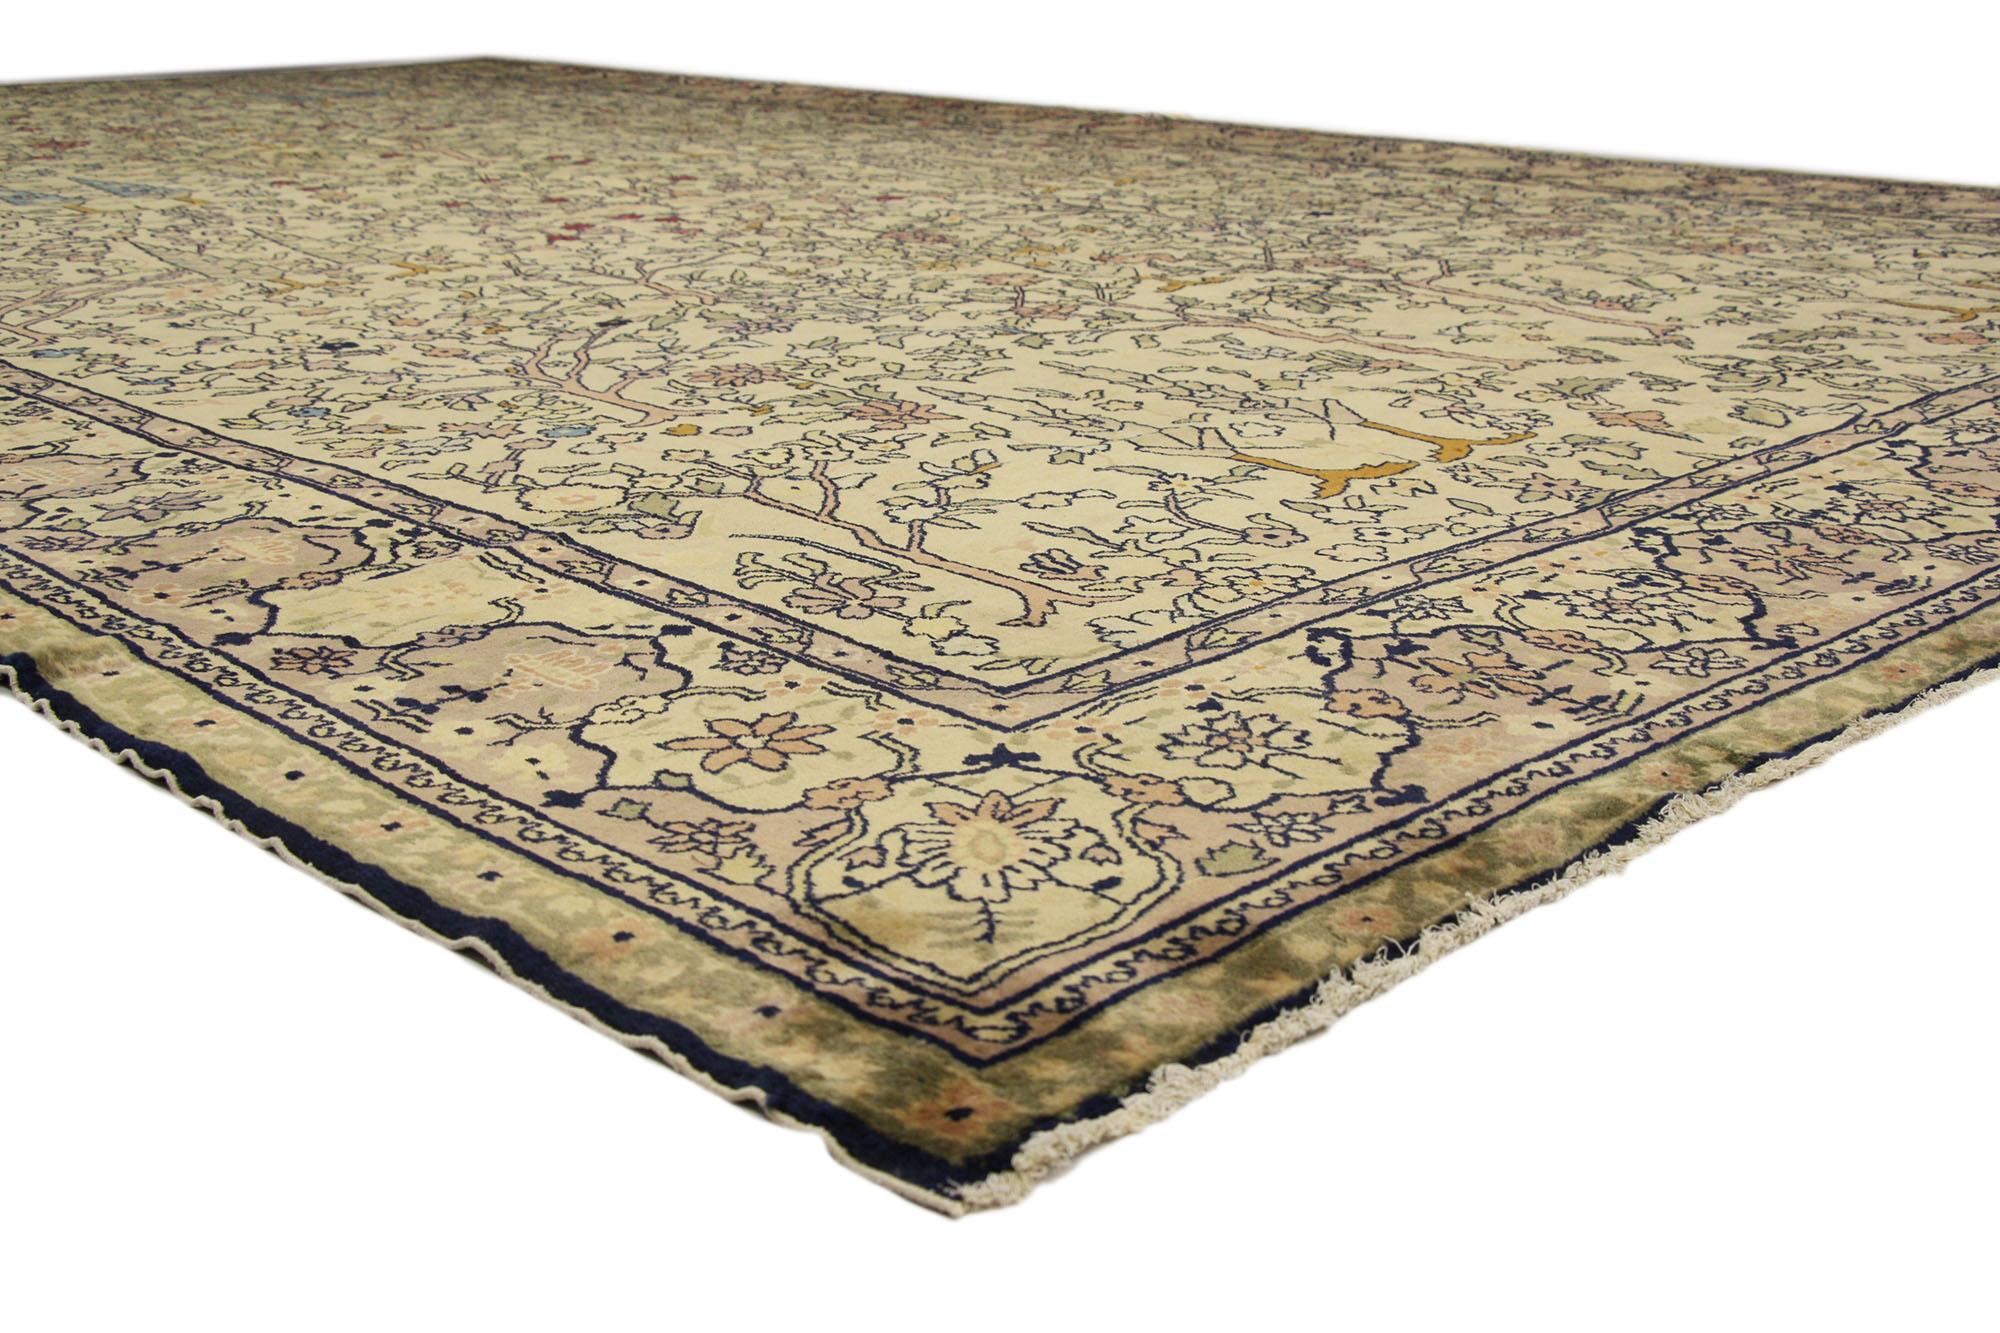 72912 Antiker indischer Agra-Teppich, 11'03 x 19'00.
Dieser übergroße, antike indische Agra-Teppich versprüht nostalgischen Charme mit unglaublichen Details und Texturen und wird Sie sicher beeindrucken. Das dekorative Allover-Muster und die sanften